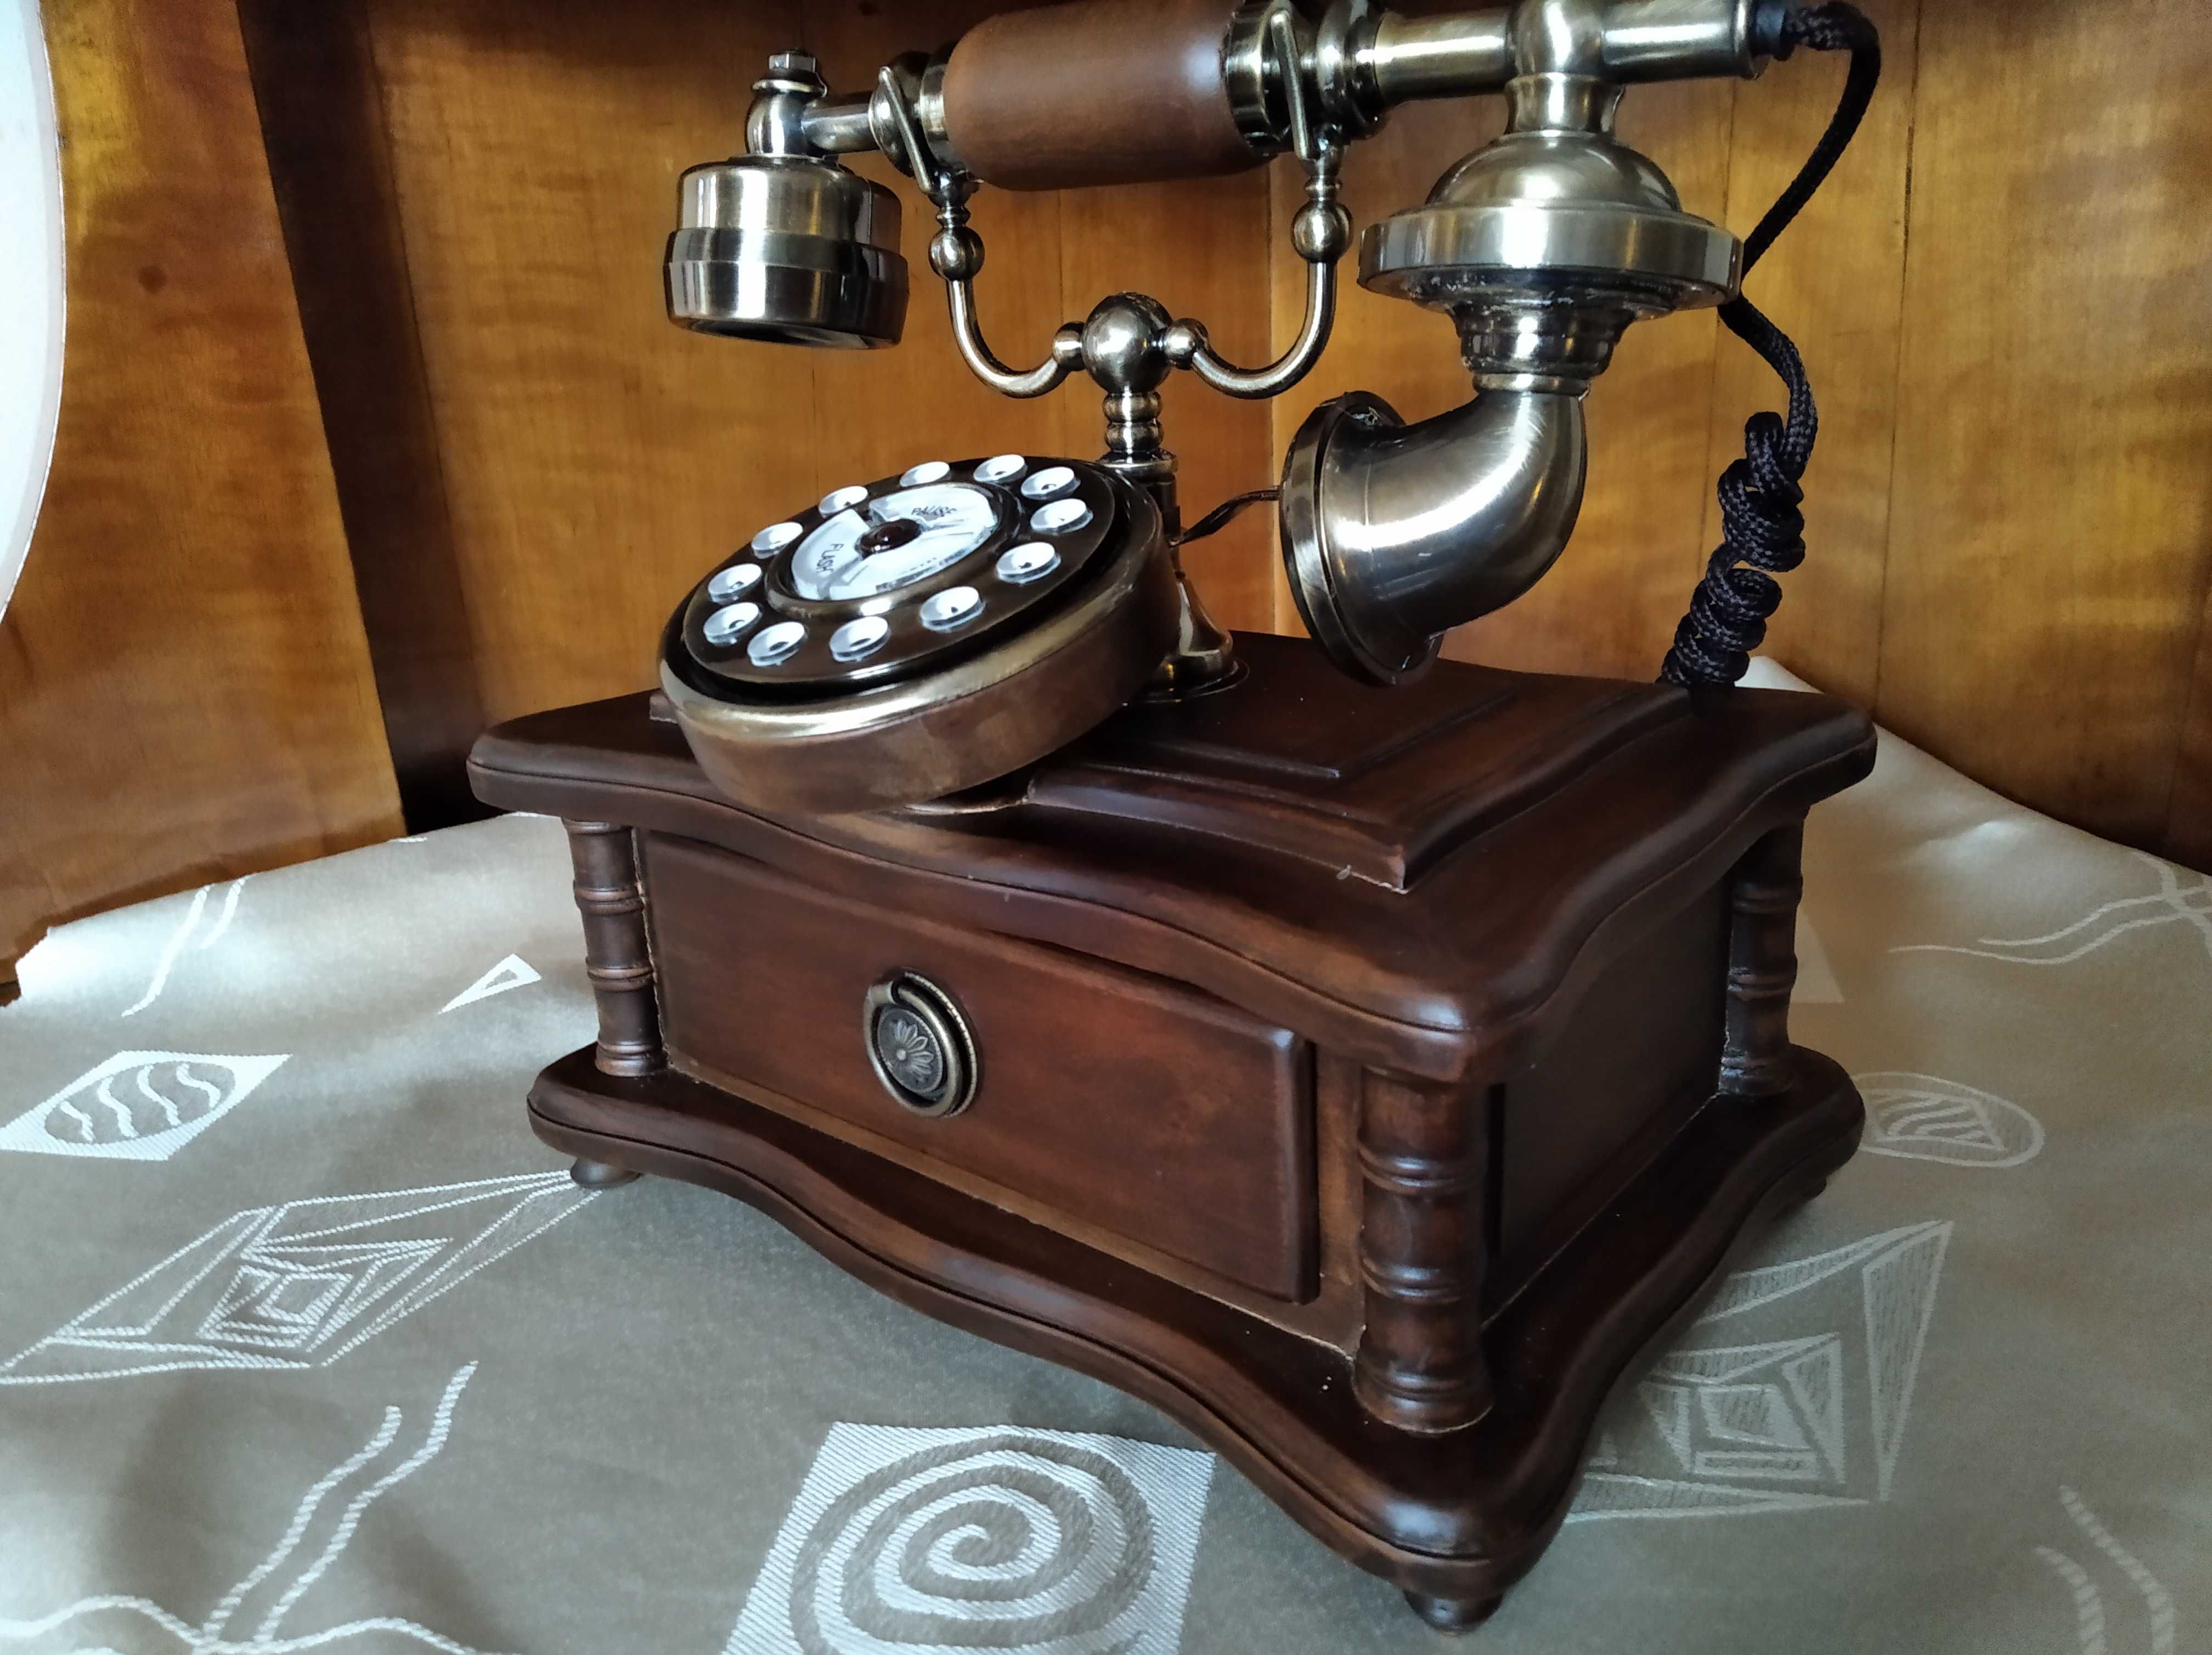 Telefon retro Vintage